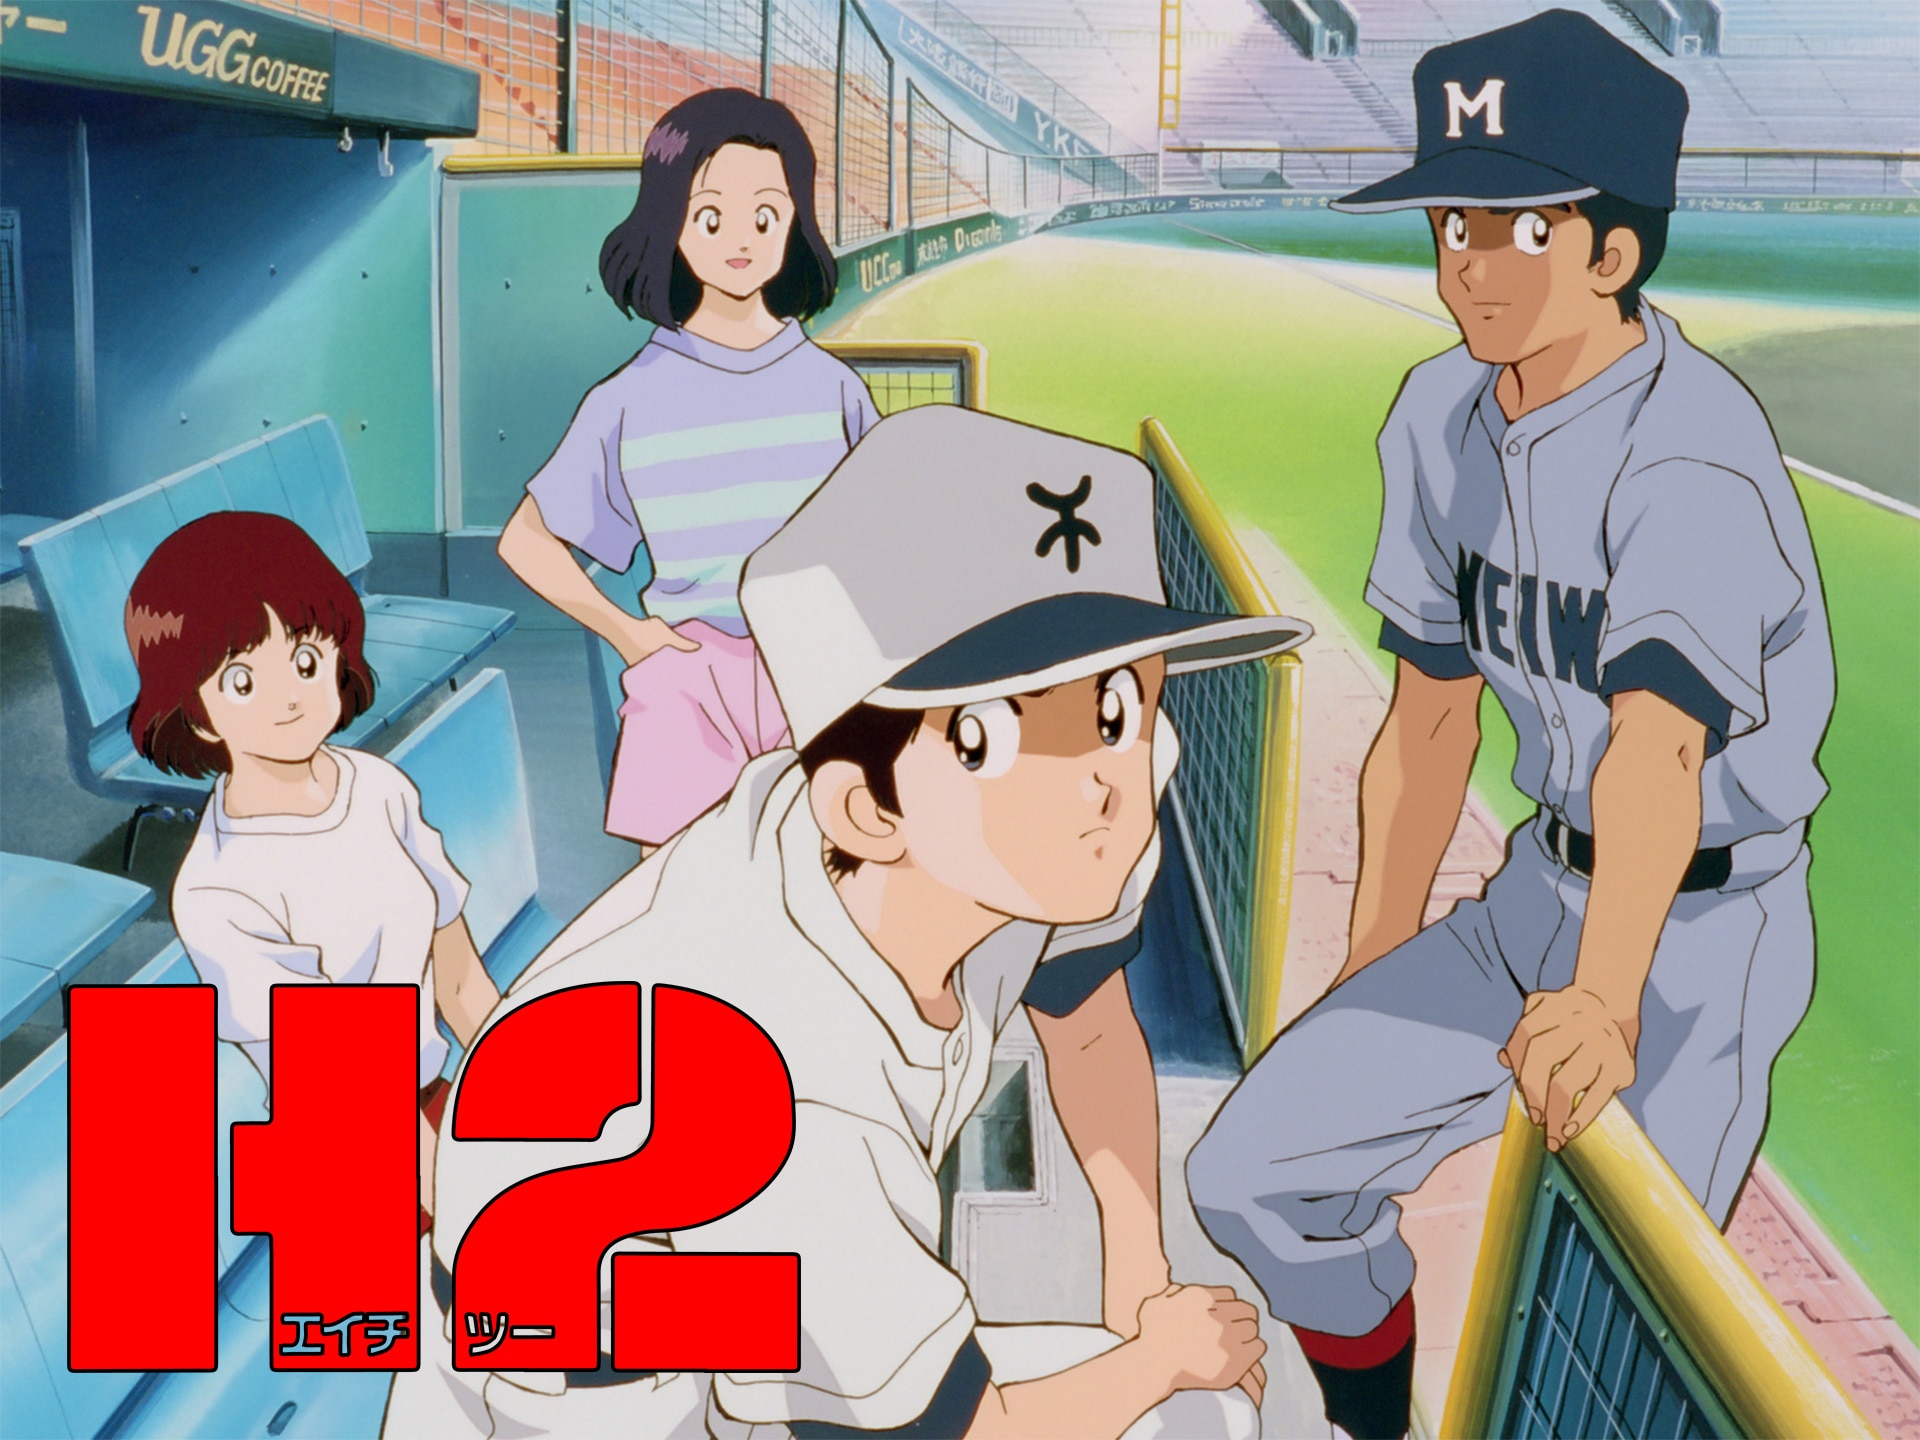 アニメ H2 Tvシリーズ 第1話 青春 野球ですか フル動画 初月無料 動画配信サービスのビデオマーケット